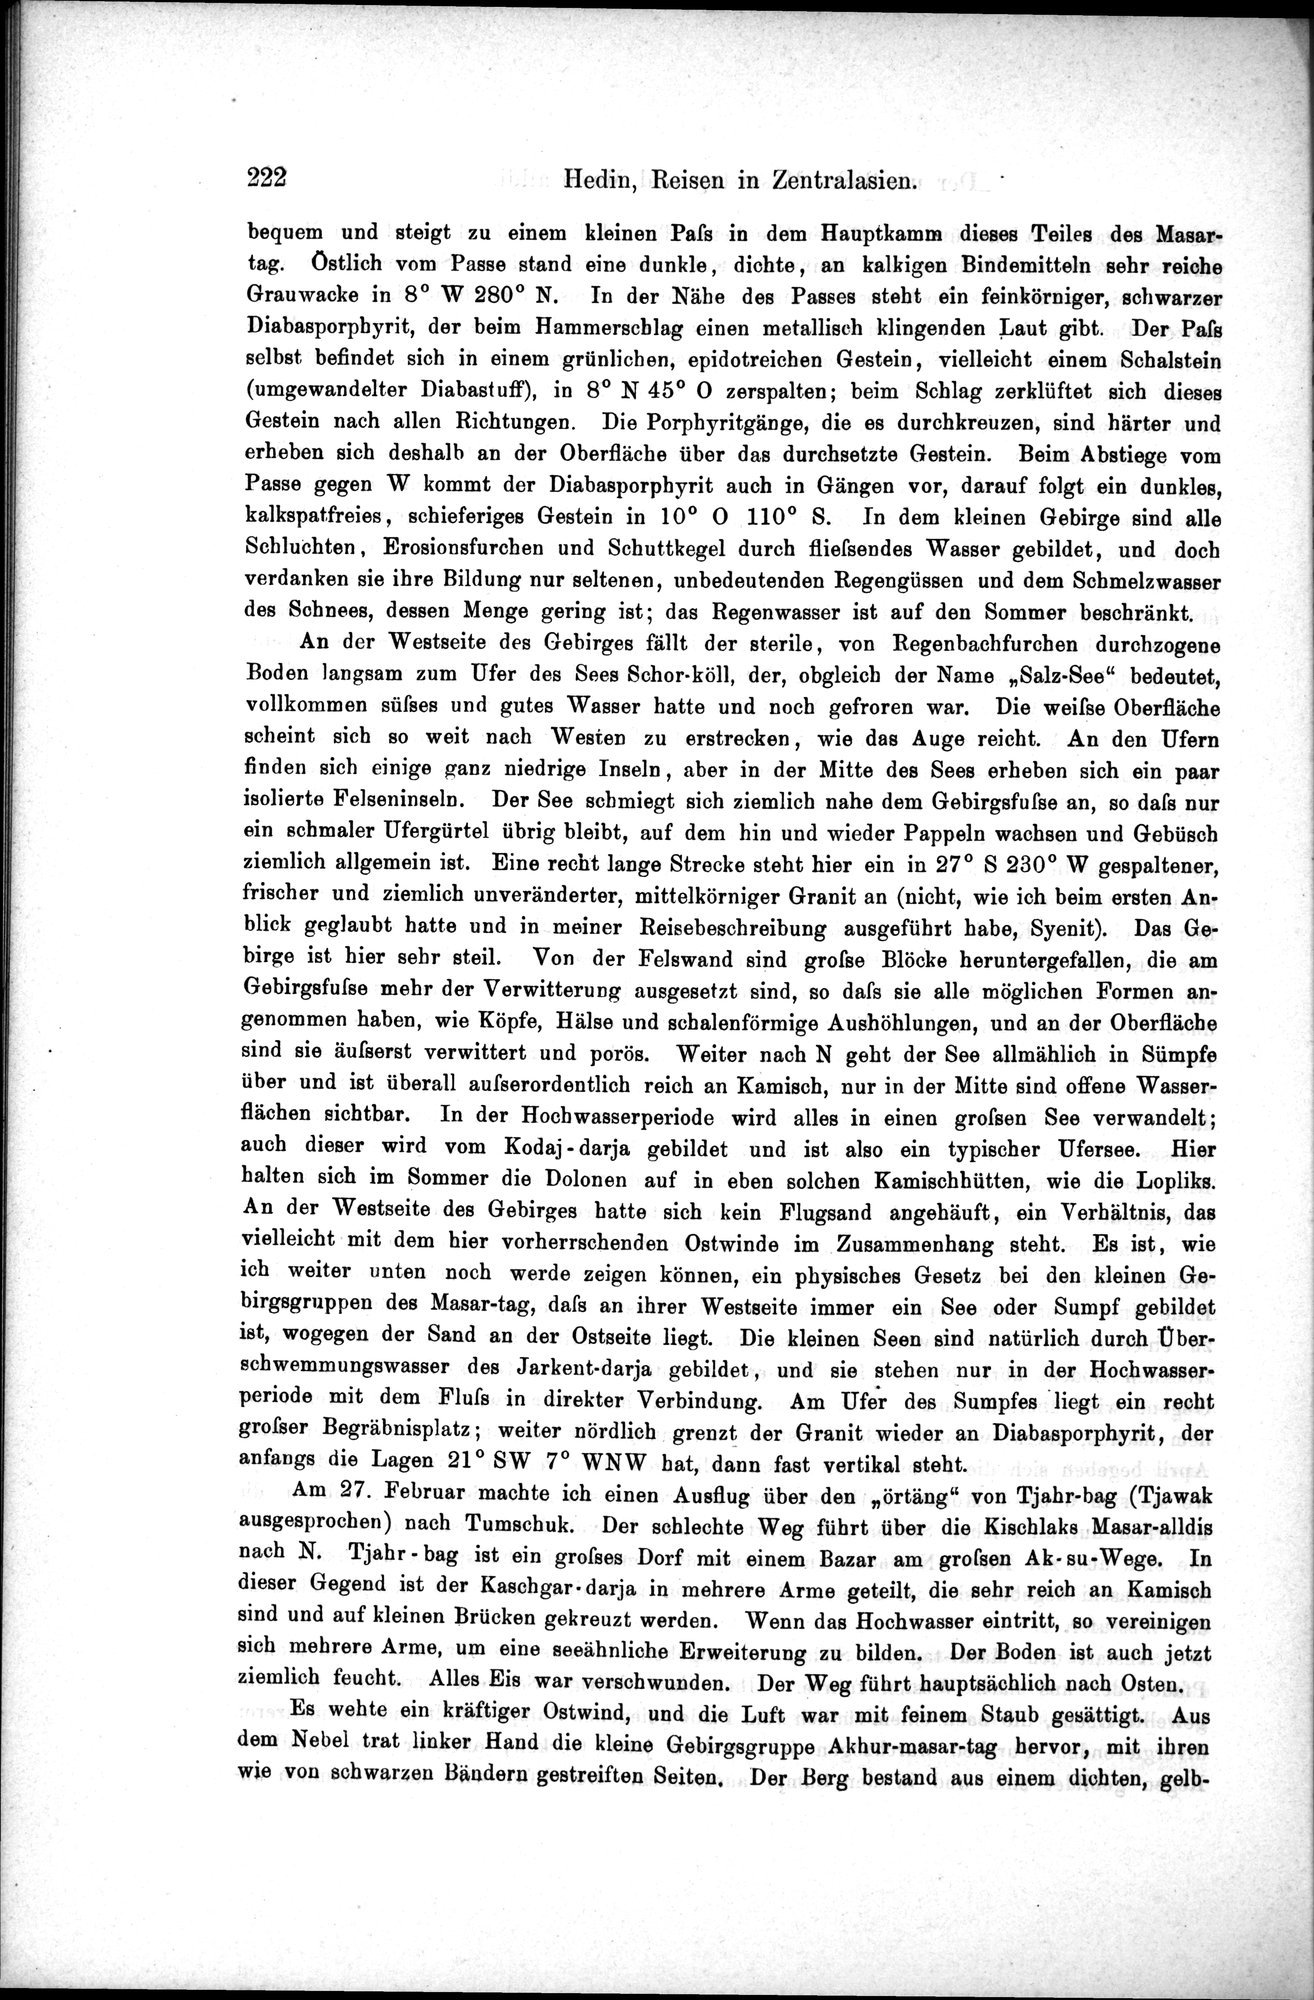 Die Geographische-Wissenschaftlichen Ergebnisse meiner Reisen in Zentralasien, 1894-1897 : vol.1 / Page 234 (Grayscale High Resolution Image)